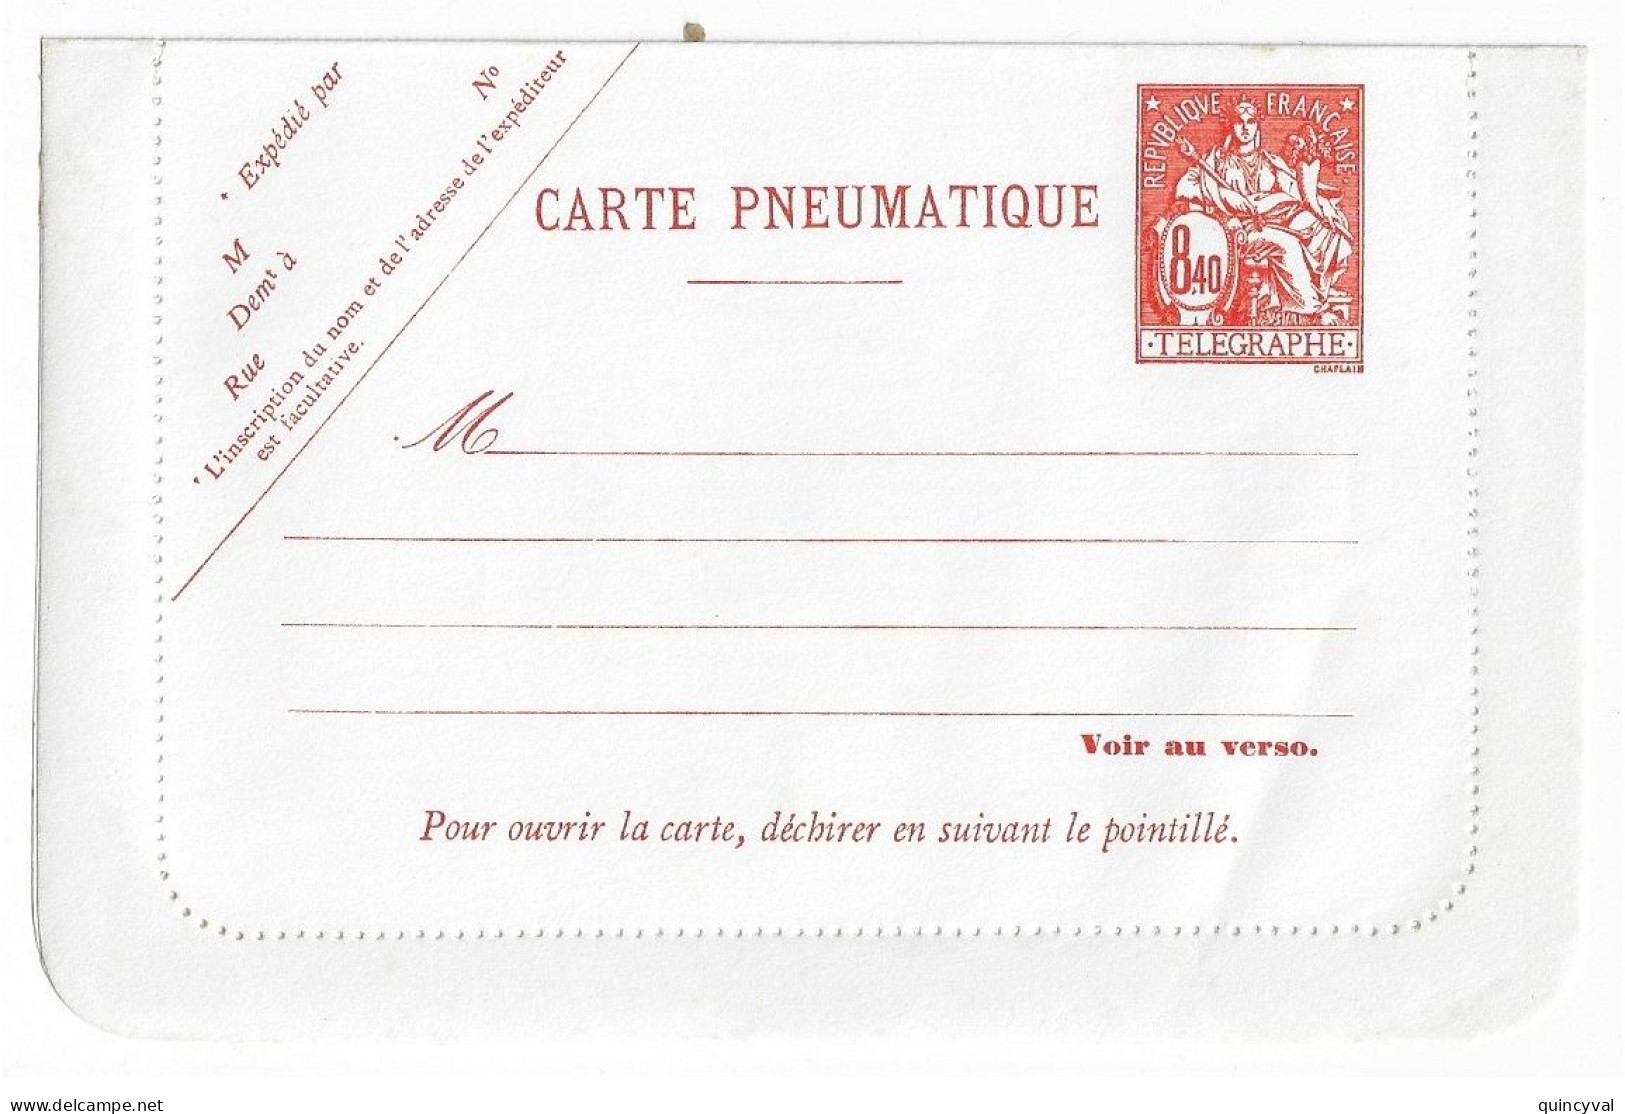 PARIS Carte Lettre Pneumatique CHAPLAIN 8,40 F Tarif 1977 Neuf Yv 2623 CLPP 8,40 F Storch V16 - Pneumatiques